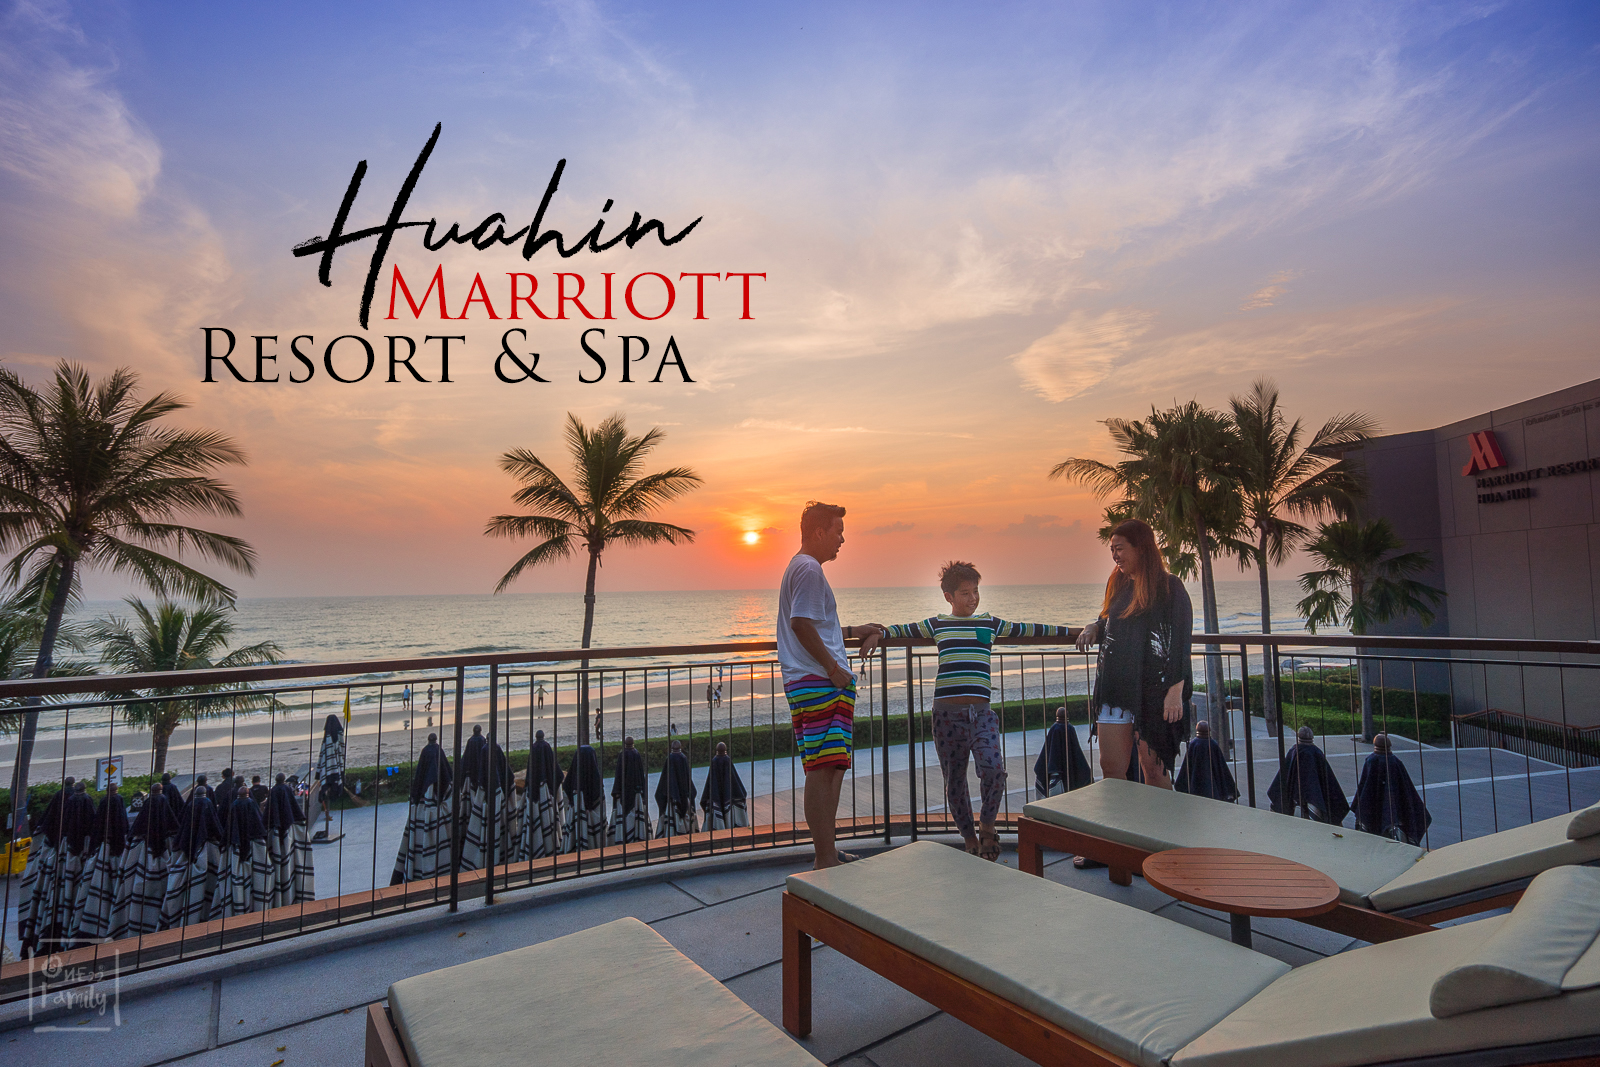 รีวิว Huahin Marriott Resort&Spa หนึ่งในที่พักครอบครัวที่ดีที่สุดของหัวหิน,one22family,อยากรู้จักโลกกว้าง,ที่พักหัวหิน,ริมทะเล,m passport,ปัน,punn's world